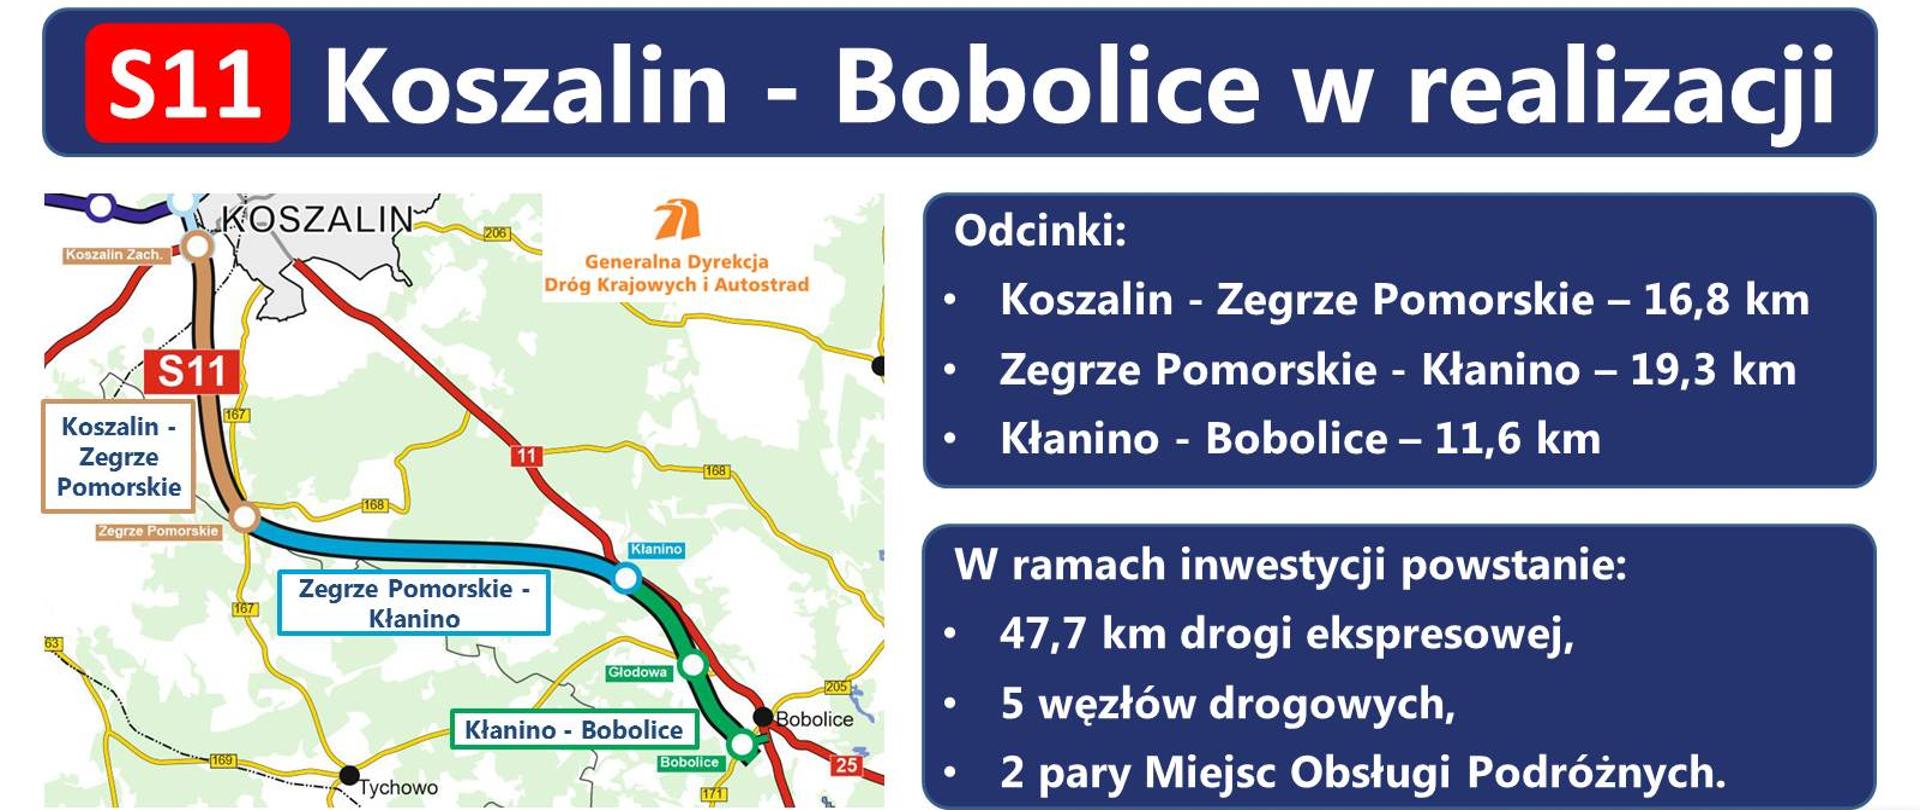 S11 Koszalin - Bobolice w realizacji - infografika